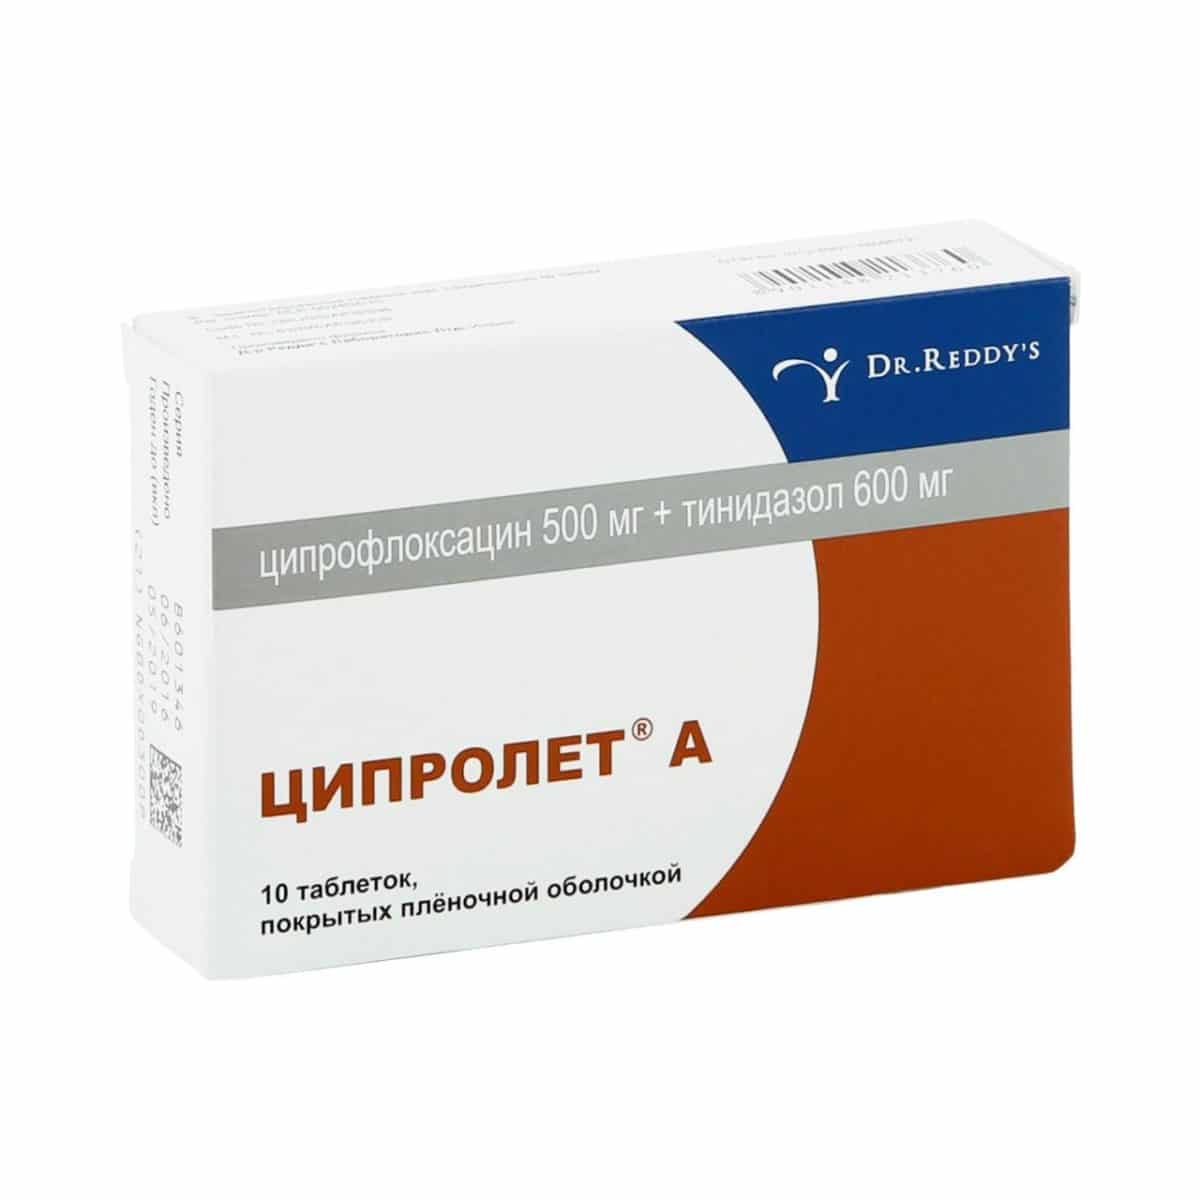 Ципрофлоксацин: инструкция по применению, аналоги и отзывы, цены в аптеках россии